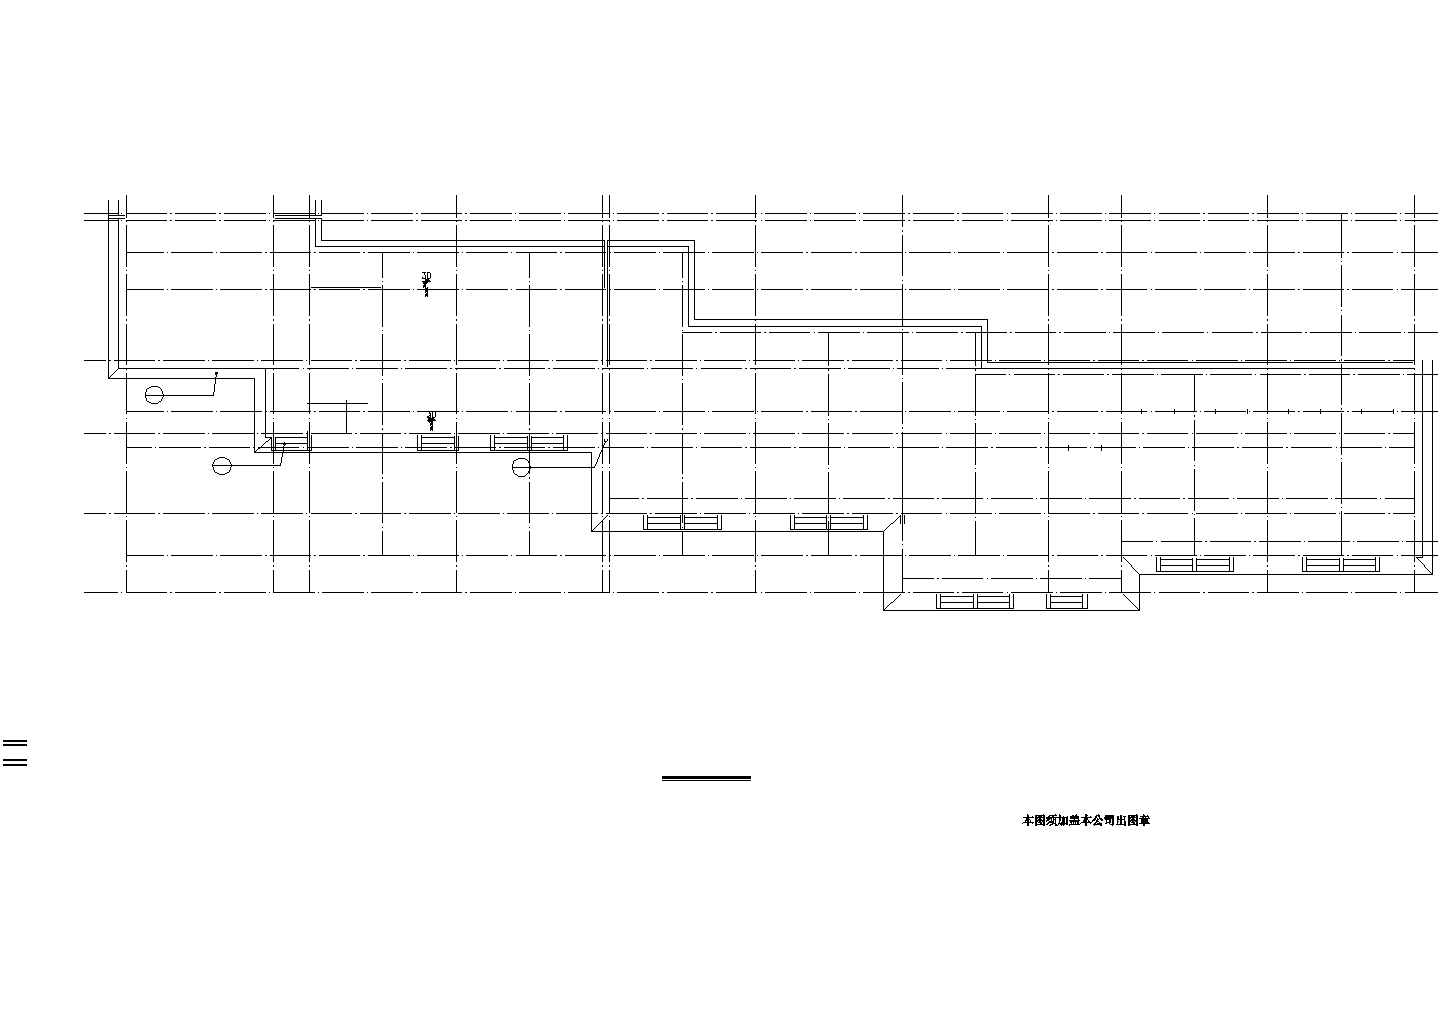 某景区戏楼组合CAD建筑施工图-南西楼